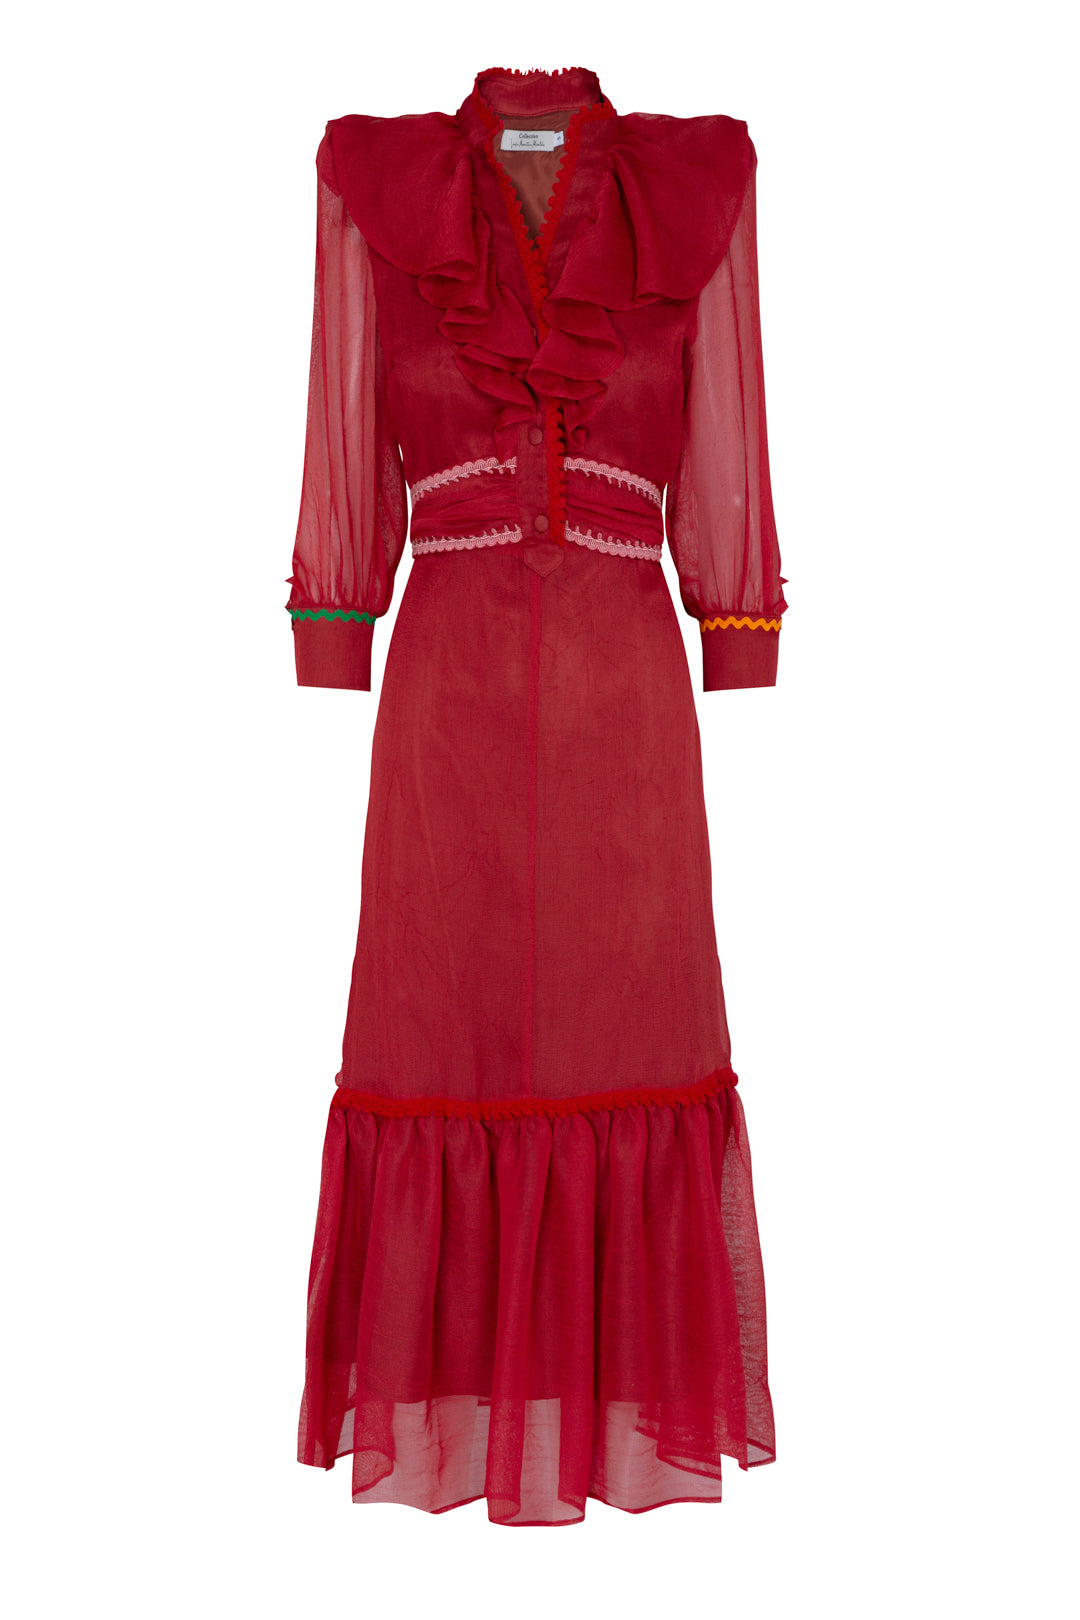 AMANDA RED CHIFFON DRESS